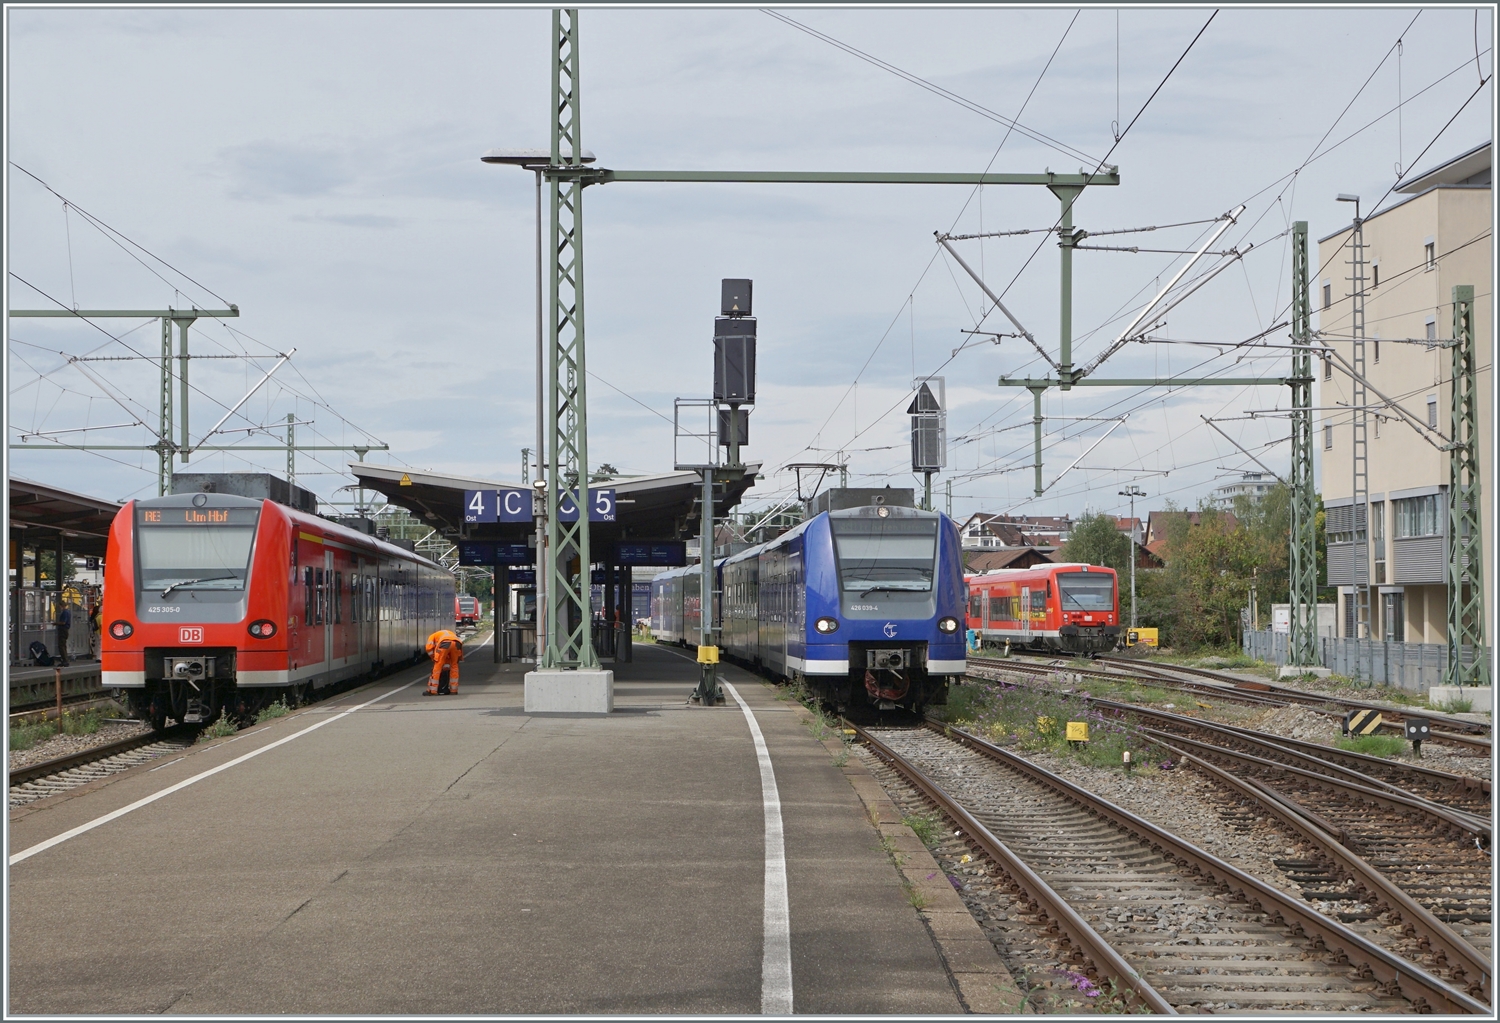 Friedrichshafen Stadtbahnhof im Laufe der Zeit: Erneut ein Zeitsprung, wenn auch im Verhältnis zu vorhergehenden weitaus kürzer, um so einschneidender jedoch die Veränderungen! Der Fahrdraht hat von Ulm und Lindau kommend Friedrichshafen erreicht, folglich wickelt sich der Zugsverkehr hauptsächlich mit elektrischer Traktion ab. Erneut stehen zwischen zwei DB-roten Zügen ein blauer BOB Triebzug: links im Bild wartet der aus Lindau Insel in Friedrichshafen angekommene DB 425 305 auf die Weiterfahrt nach Ulm, der blaue BOB 426 034-4 wird zusammen mit dem nicht zu sehenden 426 536-9 als RB91 / 87569 zum Hafenbahnhof fahren und einige DB VT 650 sind rechts im Bild abgestellt. 

14. September 2022